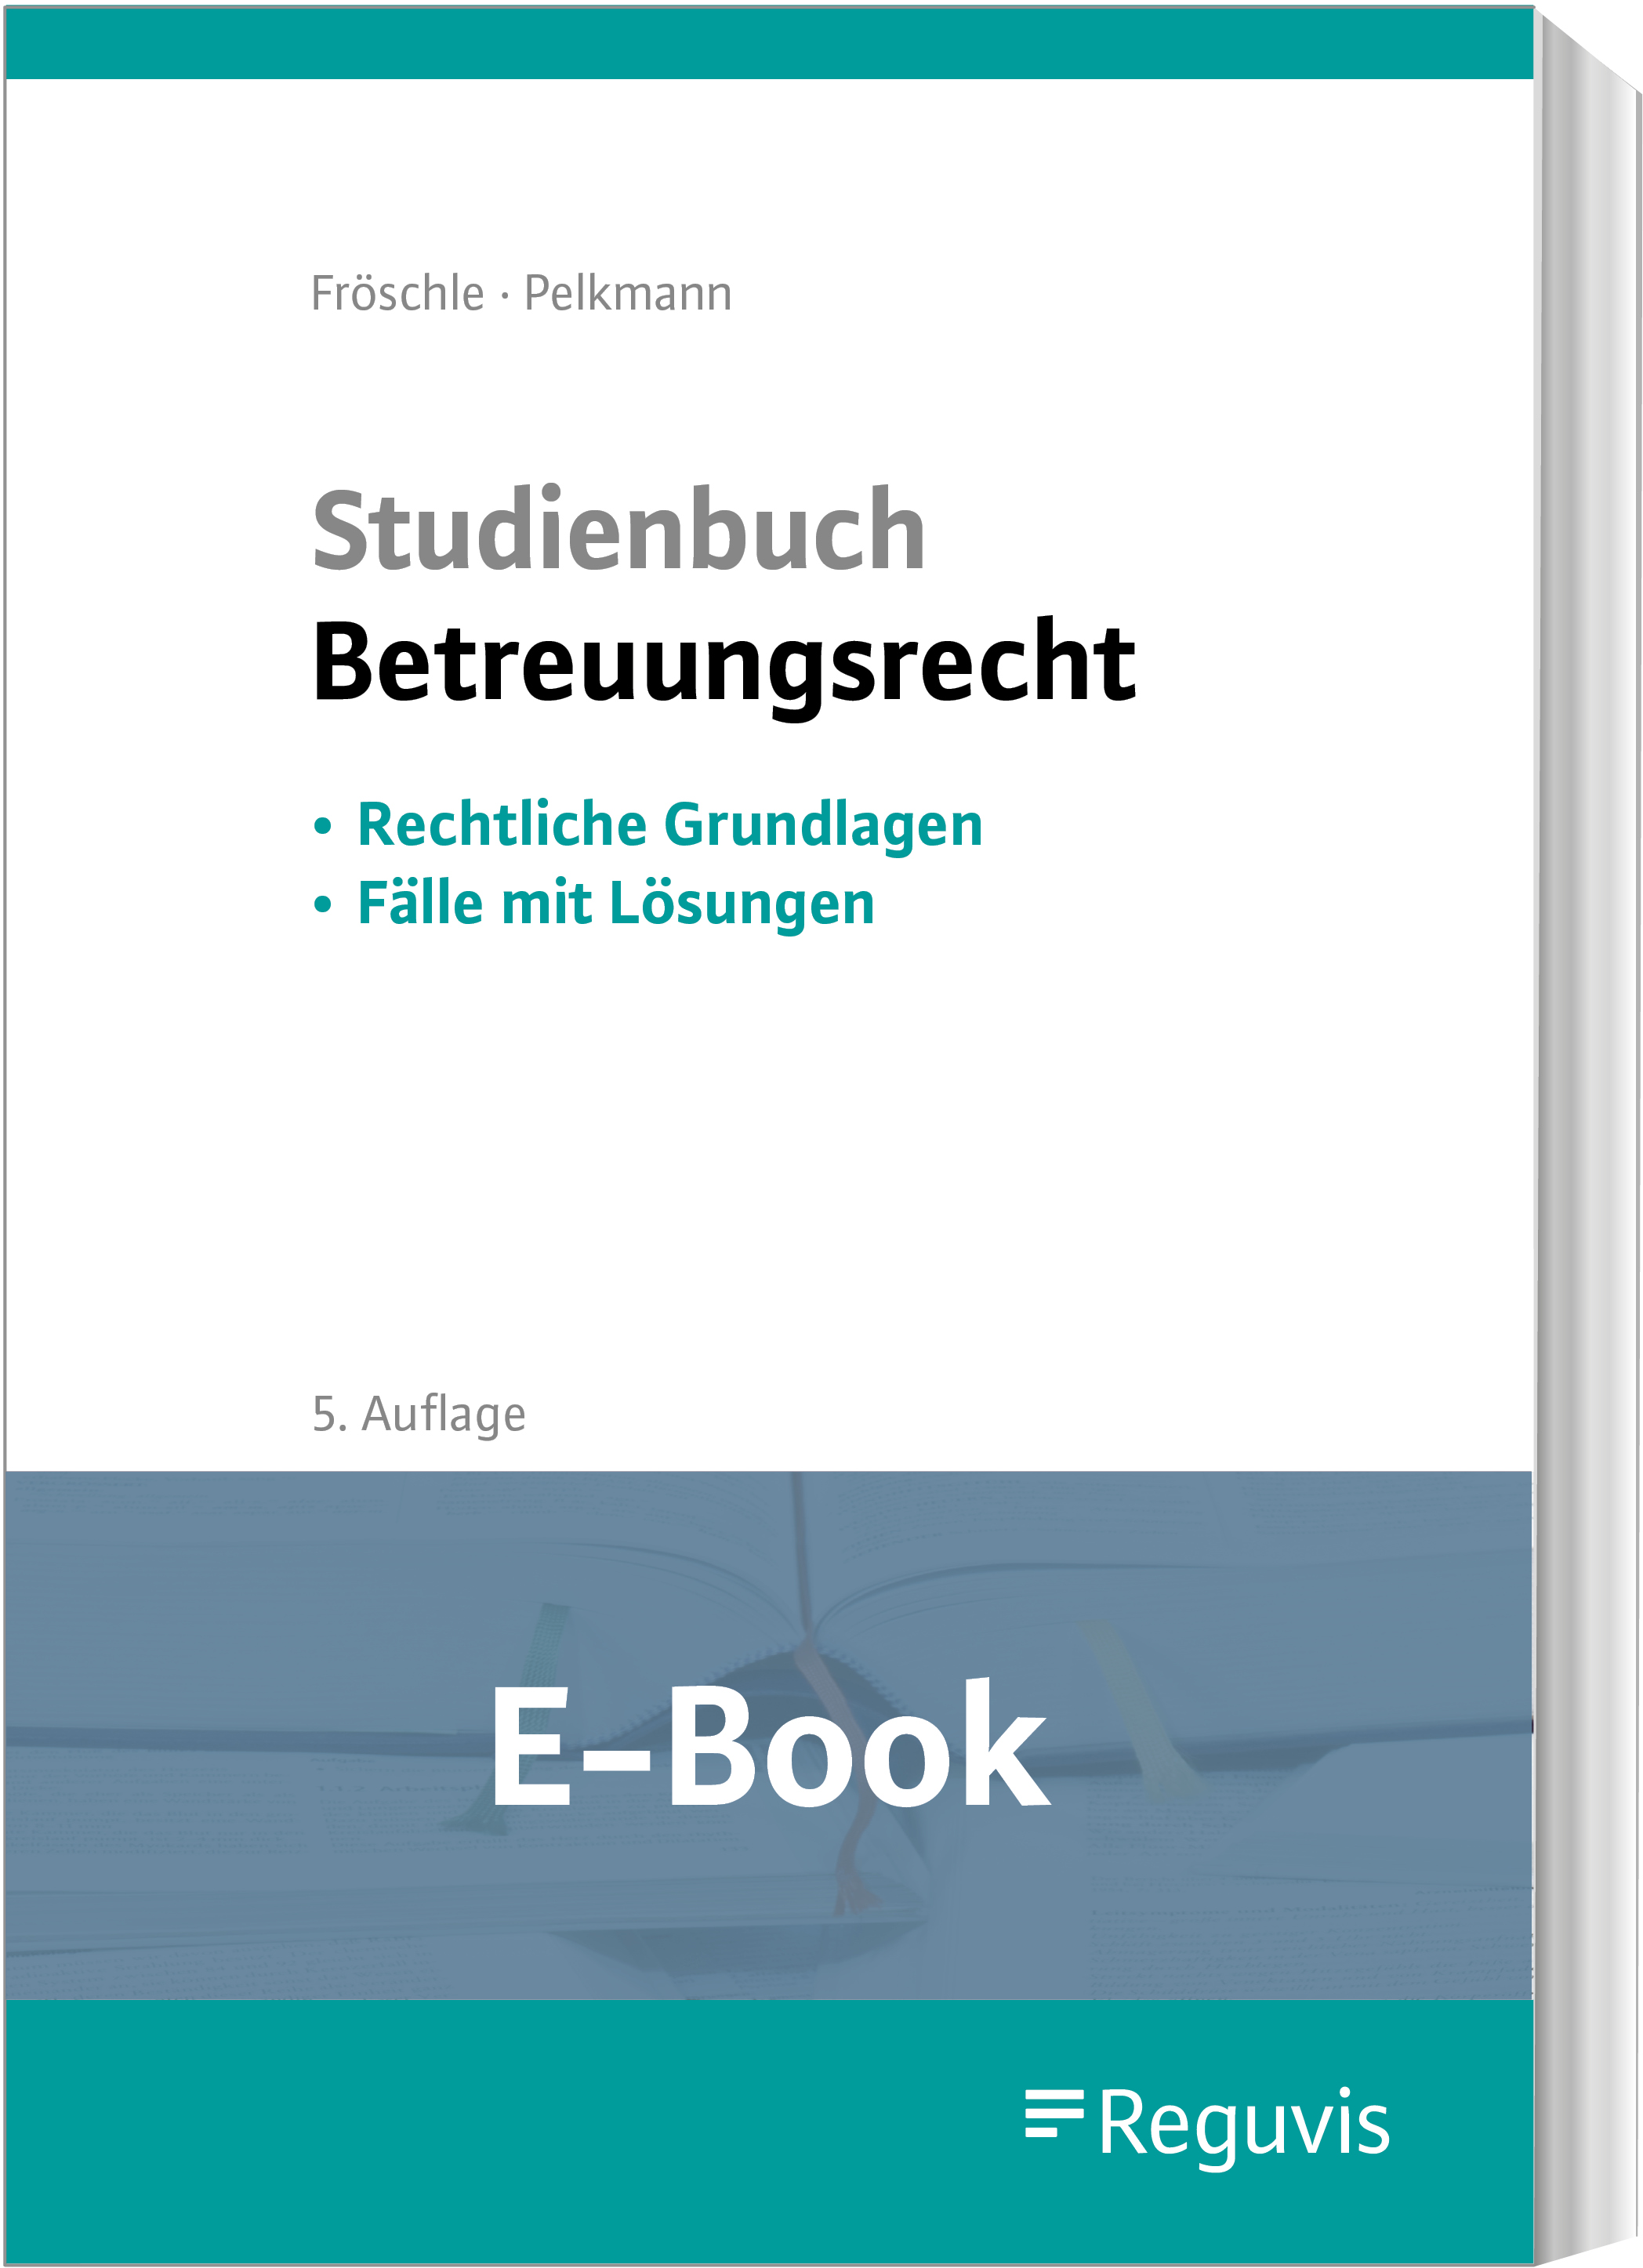 Fröschle; Studienbuch Betreuungsrecht E-Book